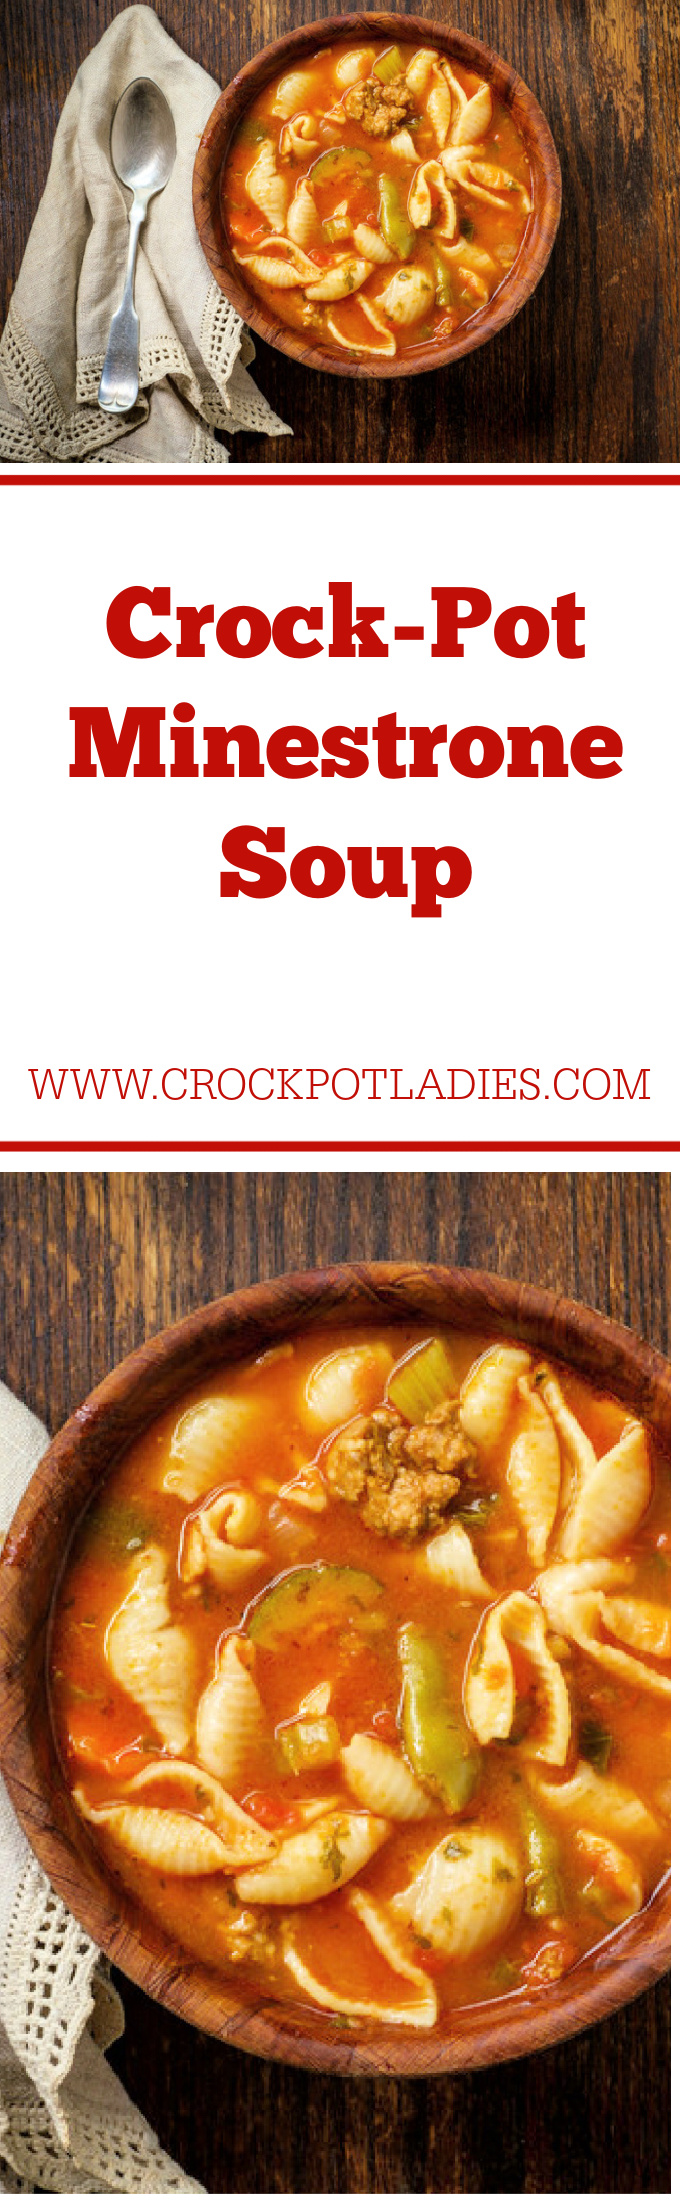 Crock-Pot Minestrone Soup